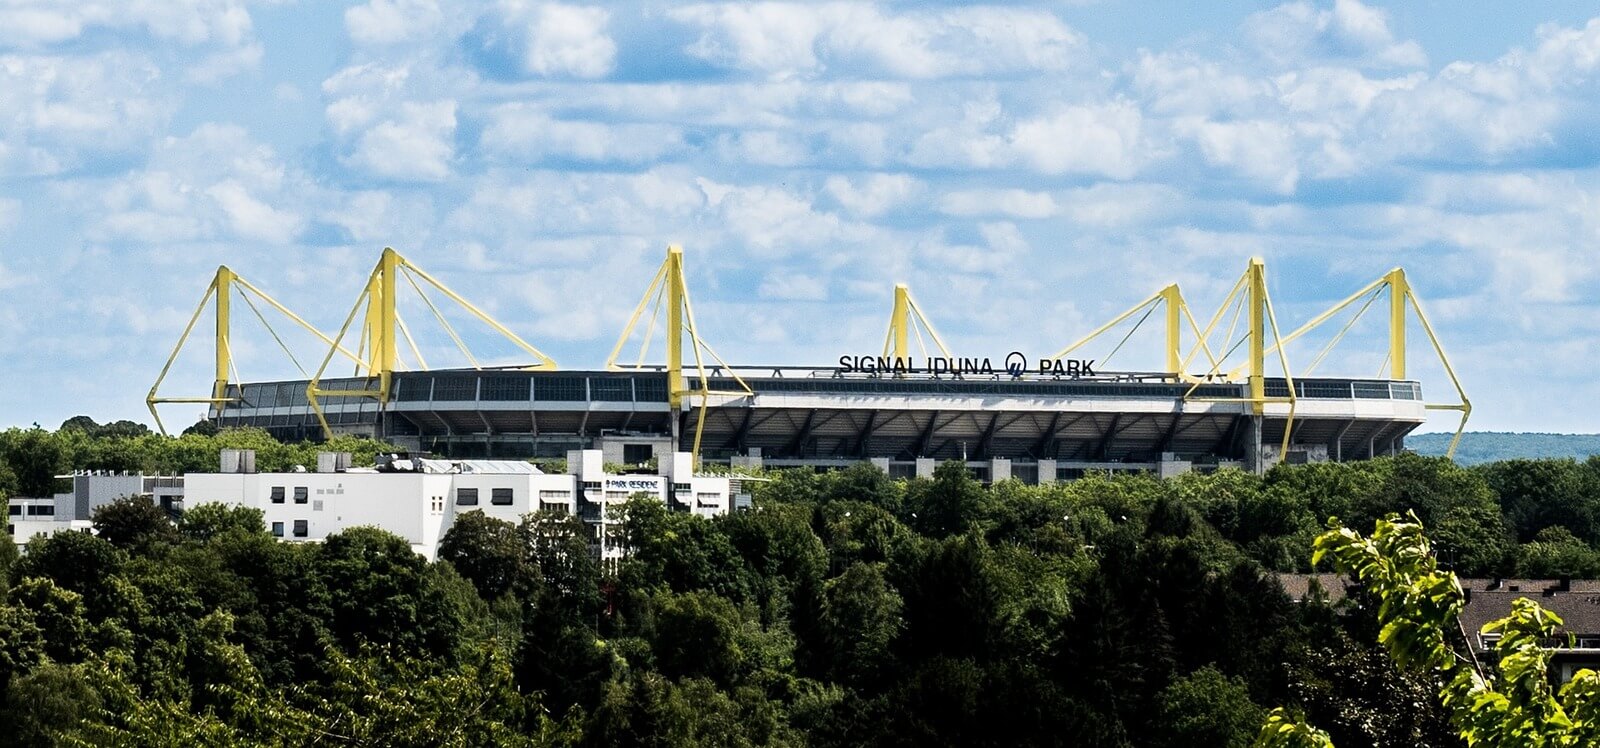 Jobs & Agenturen in Dortmund | JobSuite